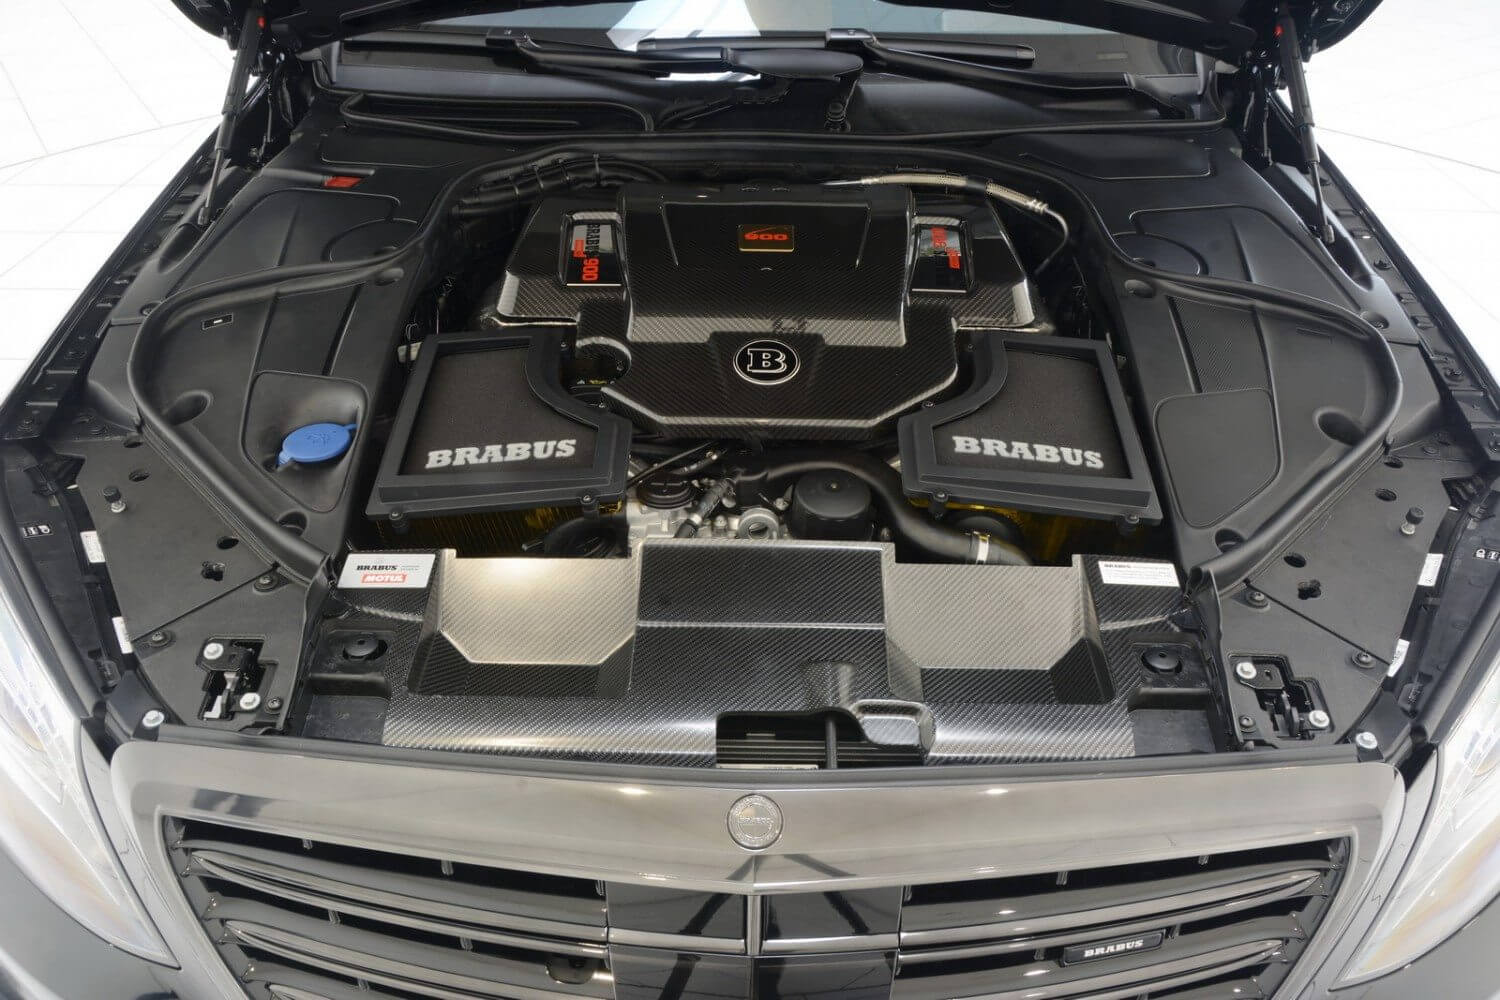 Mercedes-Maybach Brabus V12